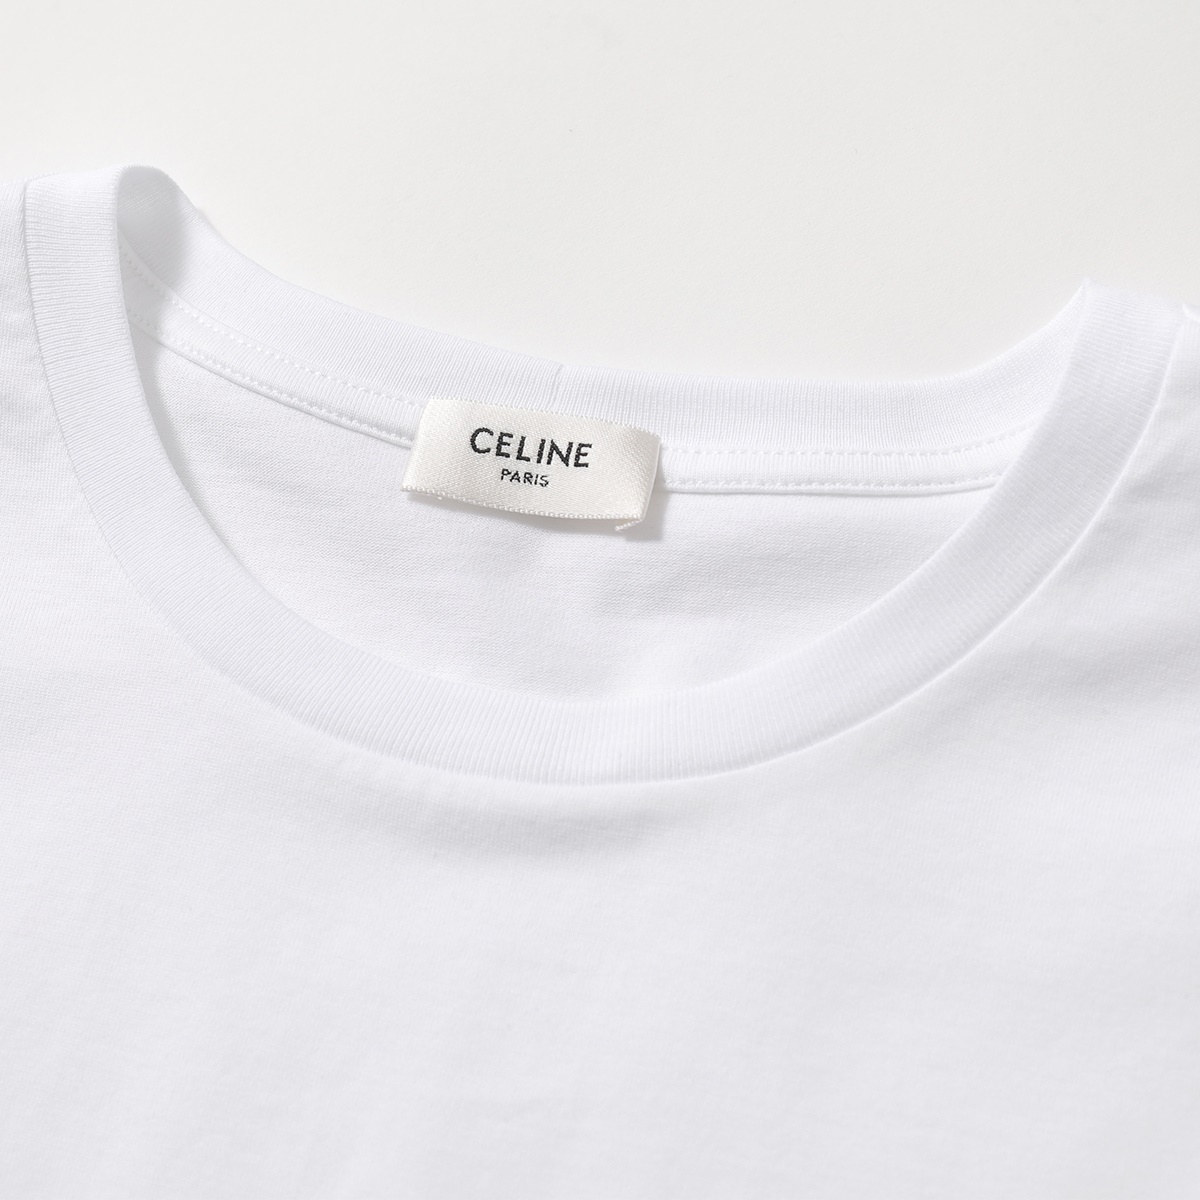 CELINE セリーヌ 2X308916G.01OB ロゴT 半袖 Tシャツ カットソー ホワイト メンズ | インポートセレクト musee